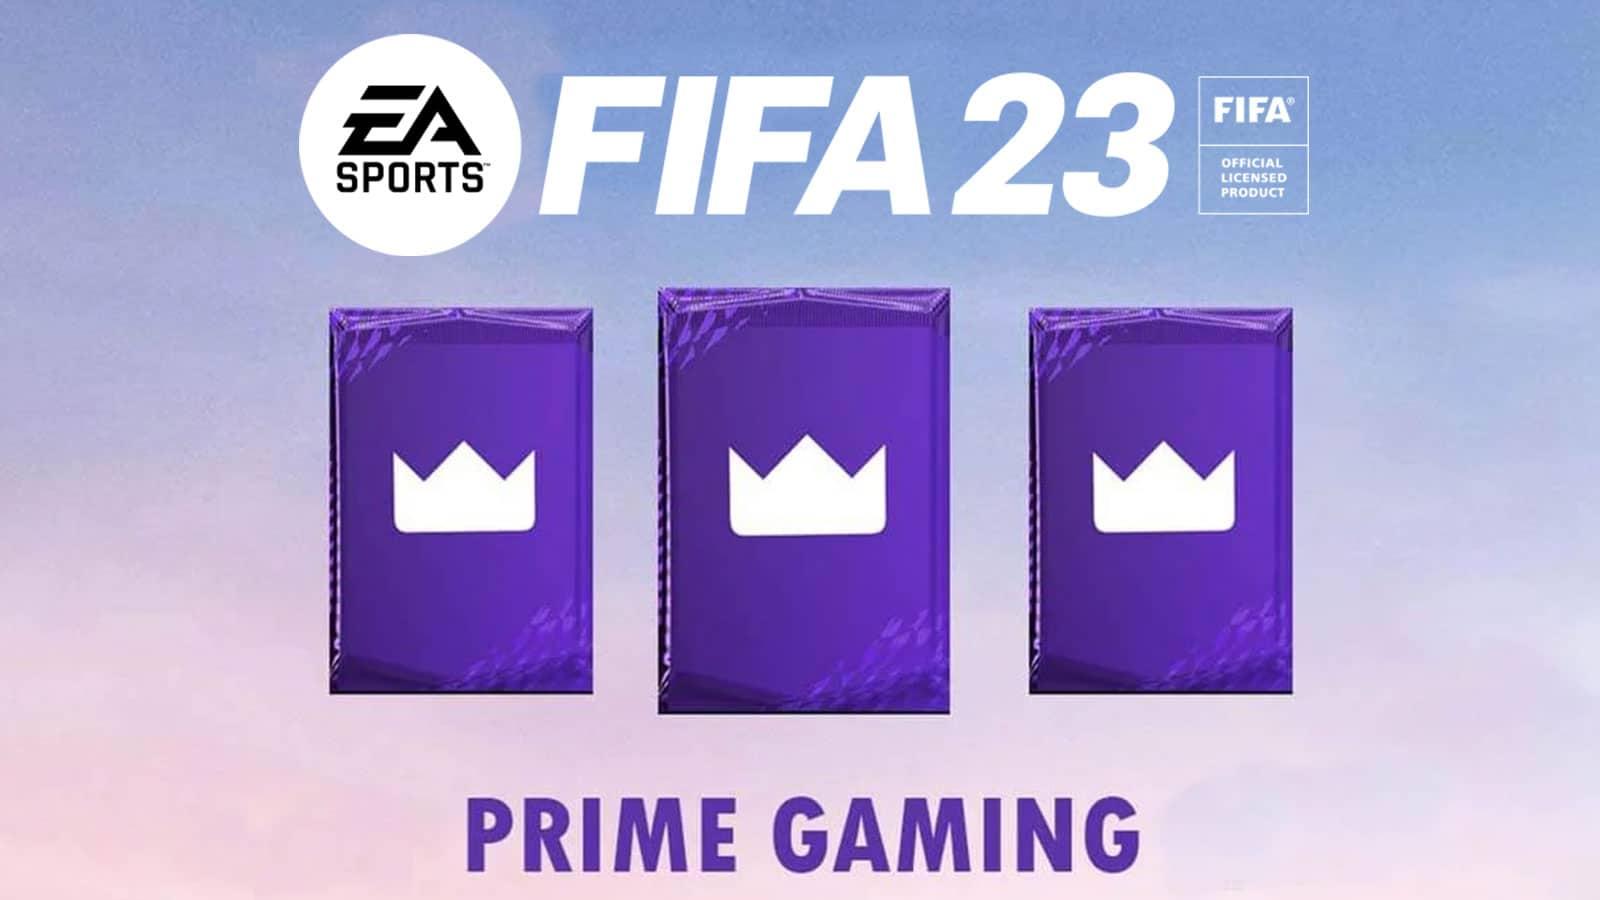 FIFA 23 Prime Gaming